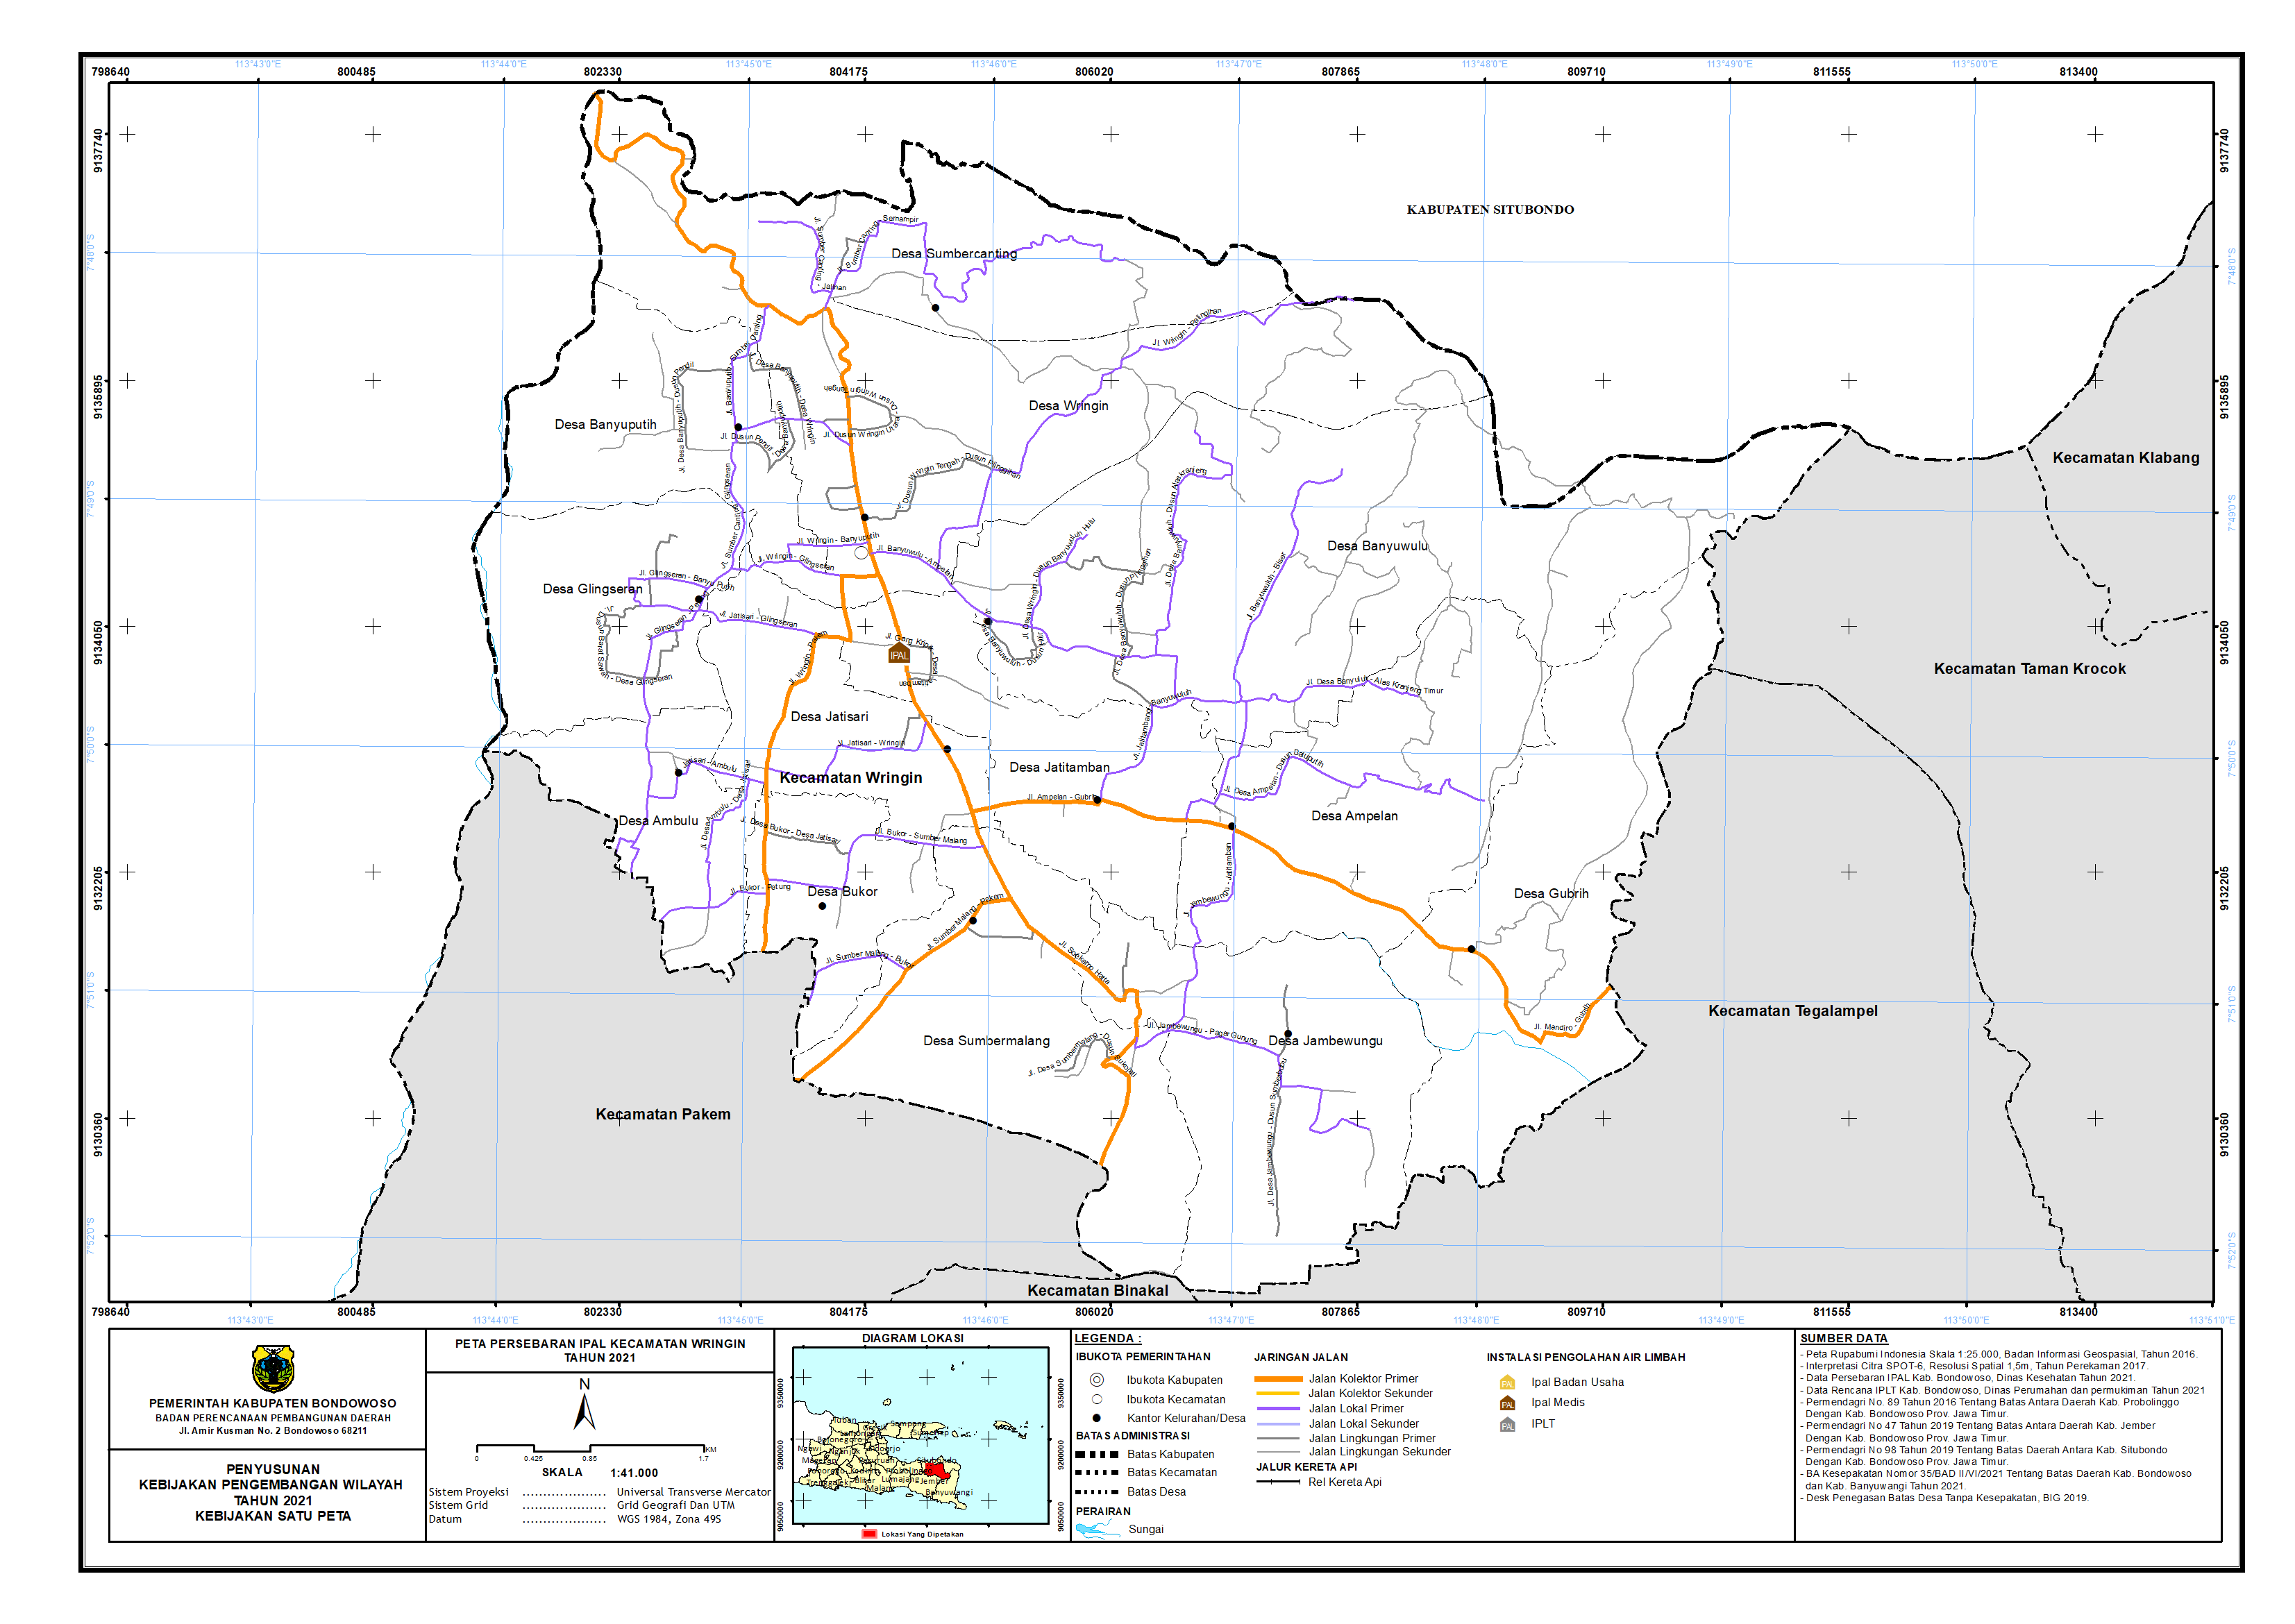 Peta Persebaran IPAL Kecamatan Wringin.png